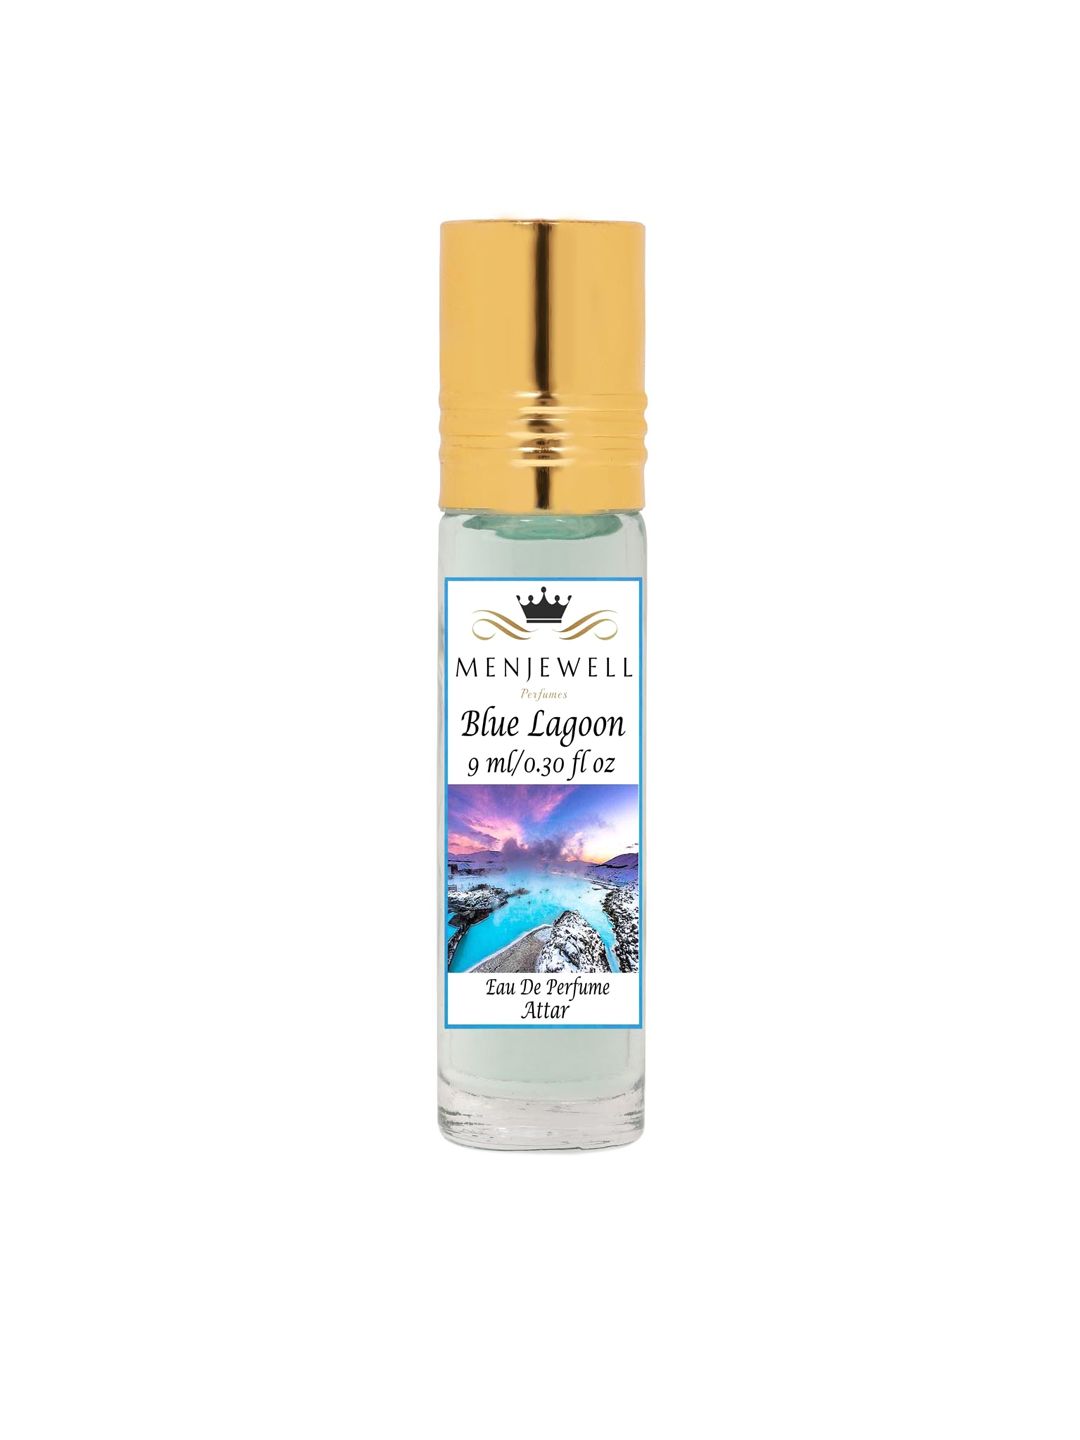 Menjewell Blue Lagoon Attar Perfume - 9 ml Price in India